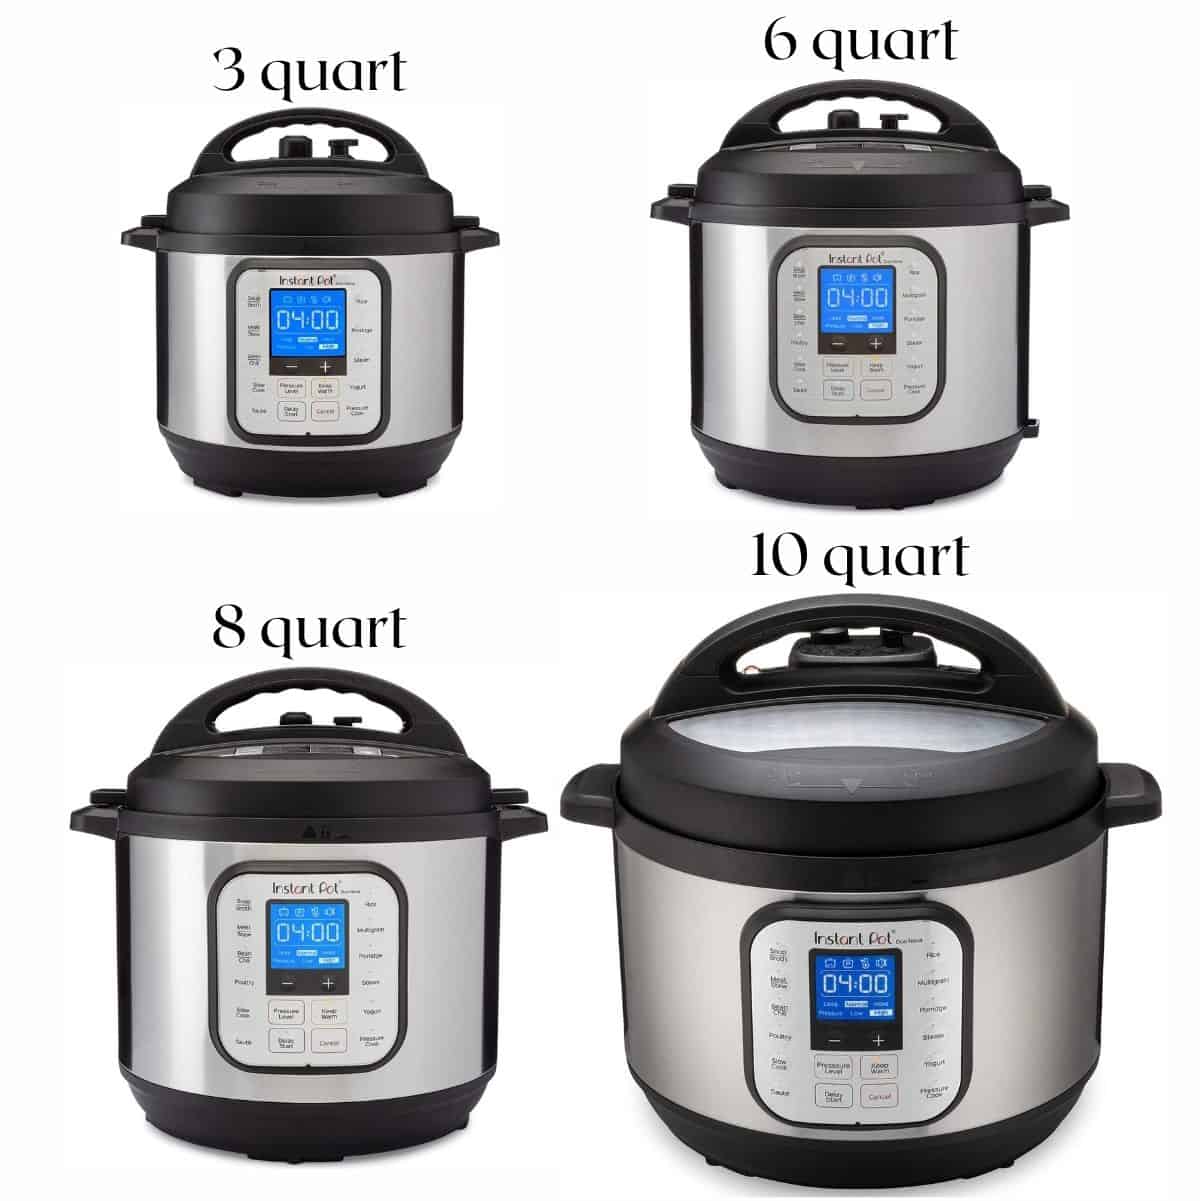 4 Instant pots - 3, 6, 8 and 10 quart